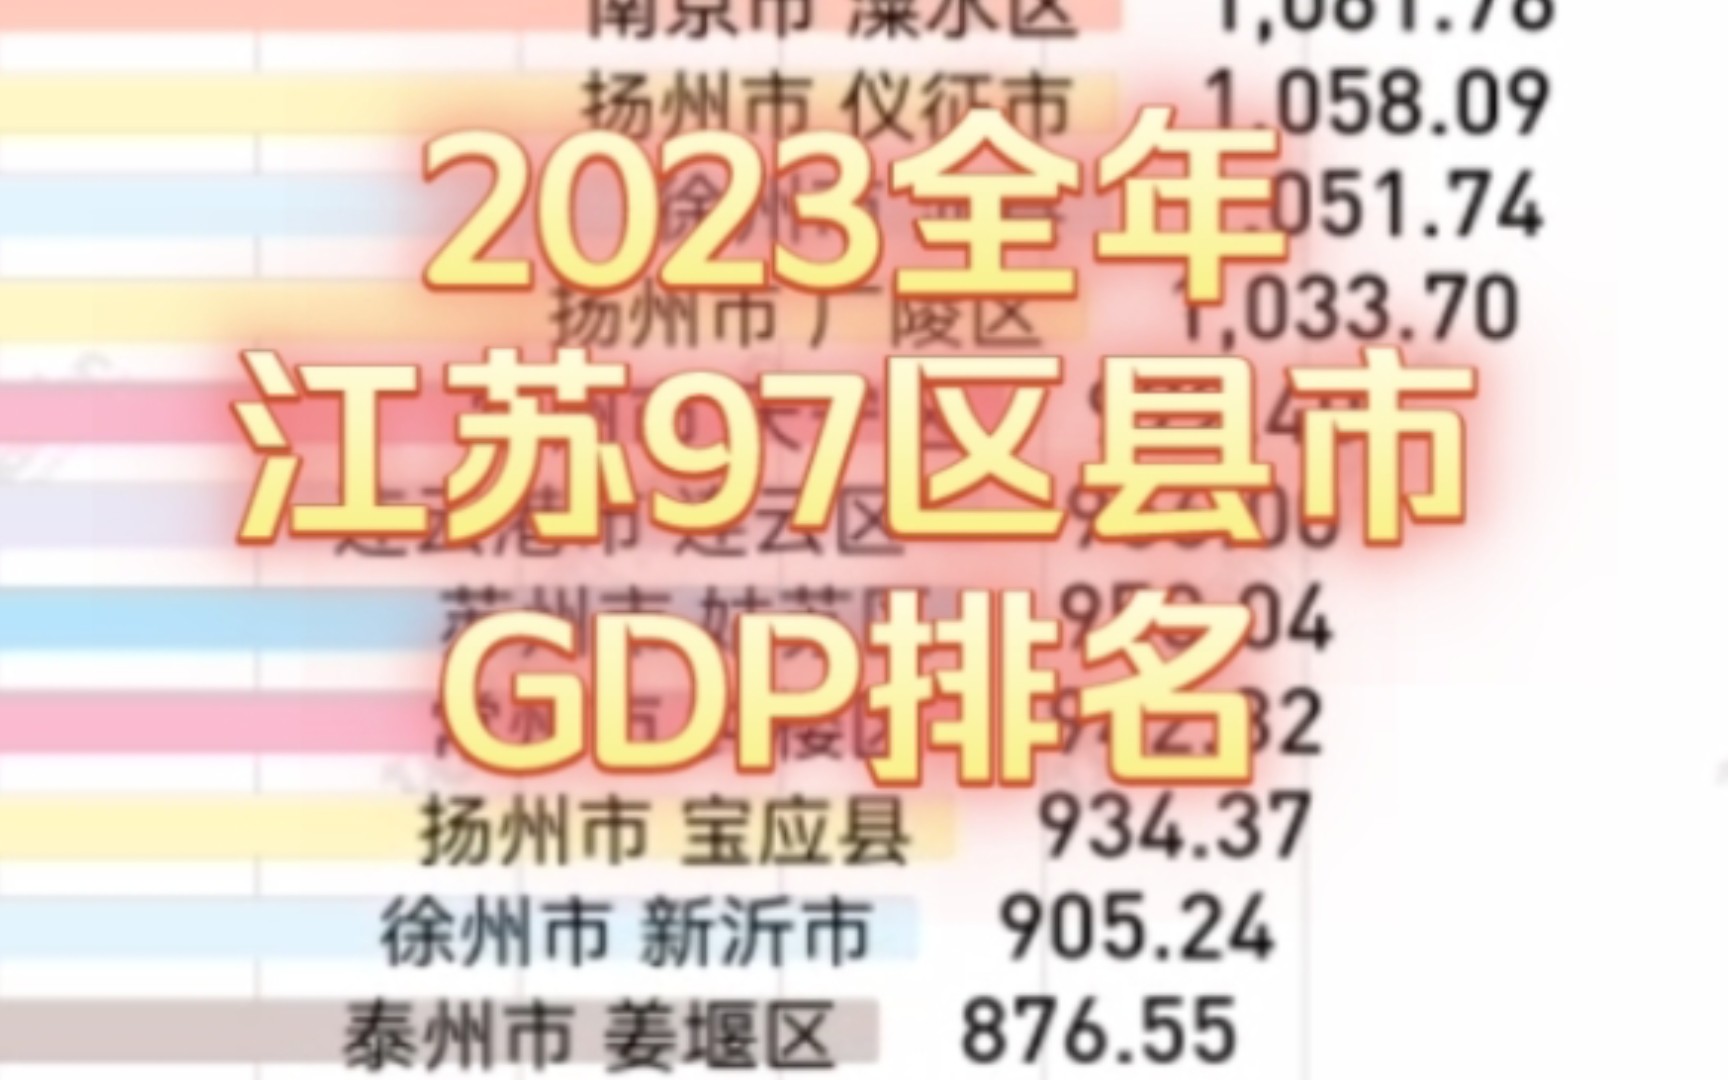 2023年江苏97区县市GDP排名。多个区县迈入1000亿